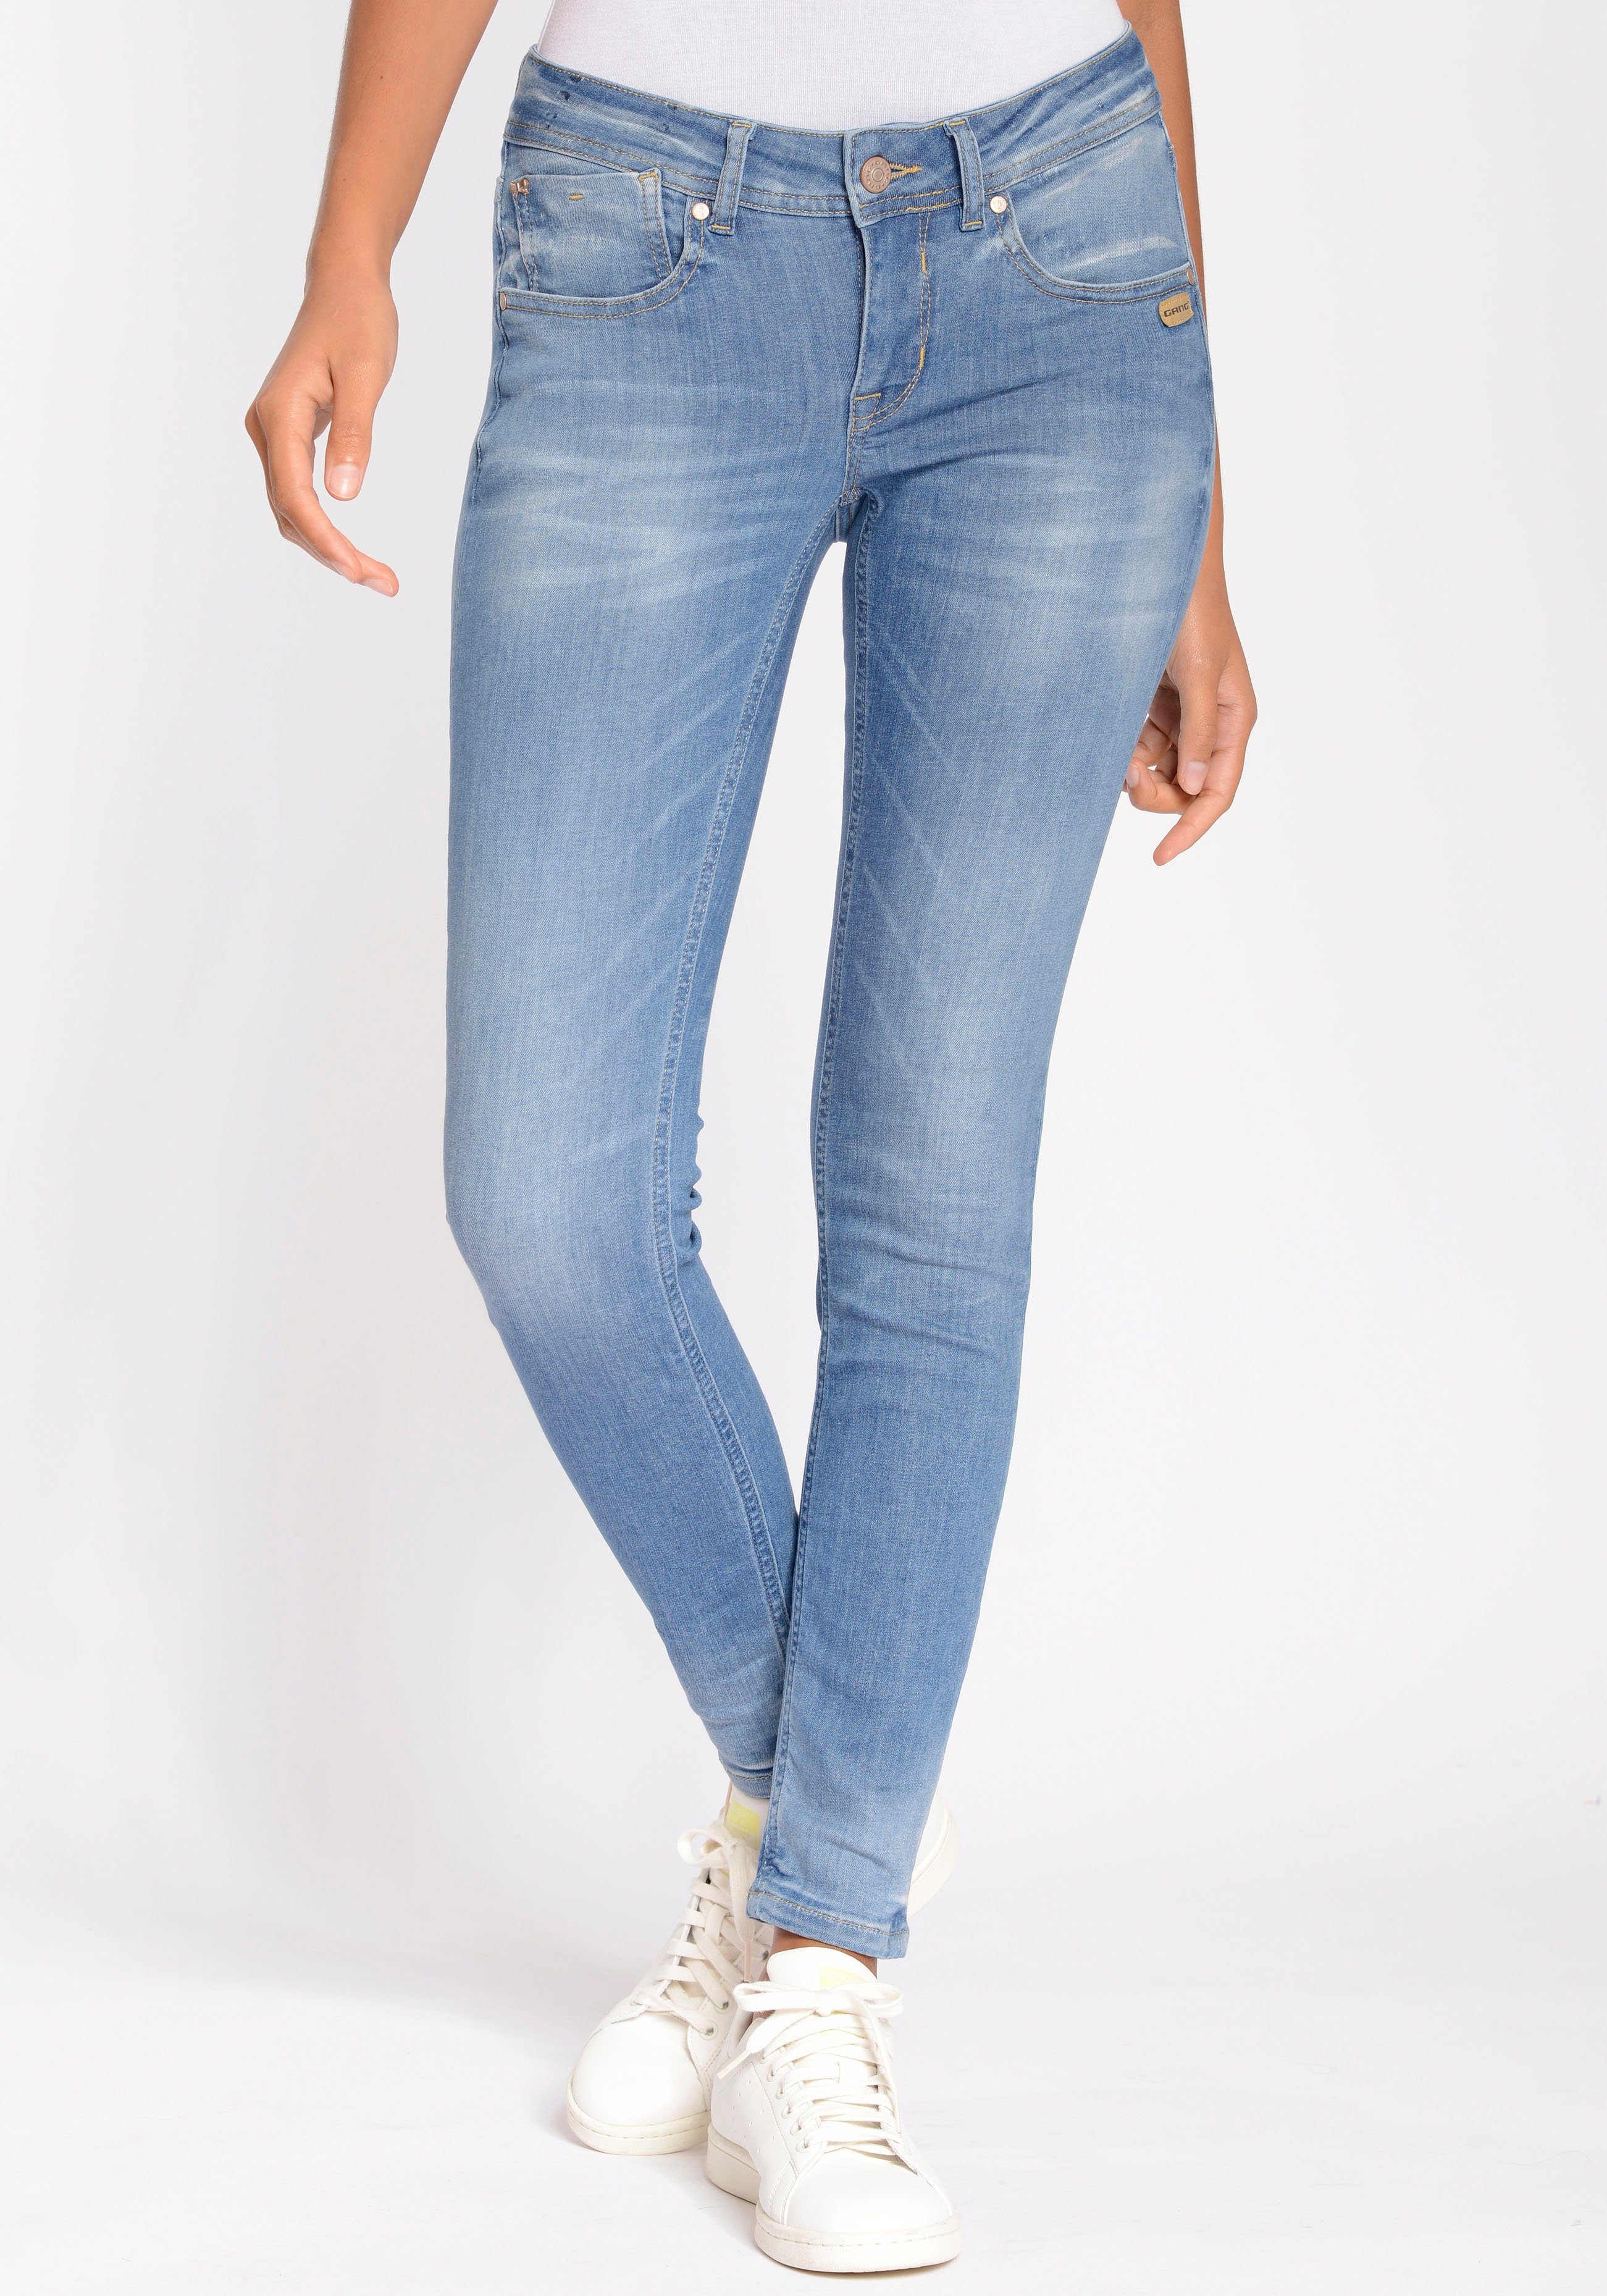 94FAYE Skinny-fit-Jeans 27 Model mit einer bei Größe 1,76m und 36 Körpergröße GANG Elastizität Das hoher ultimativem Komfort, Konfektionsgröße trägt von CROPPED und